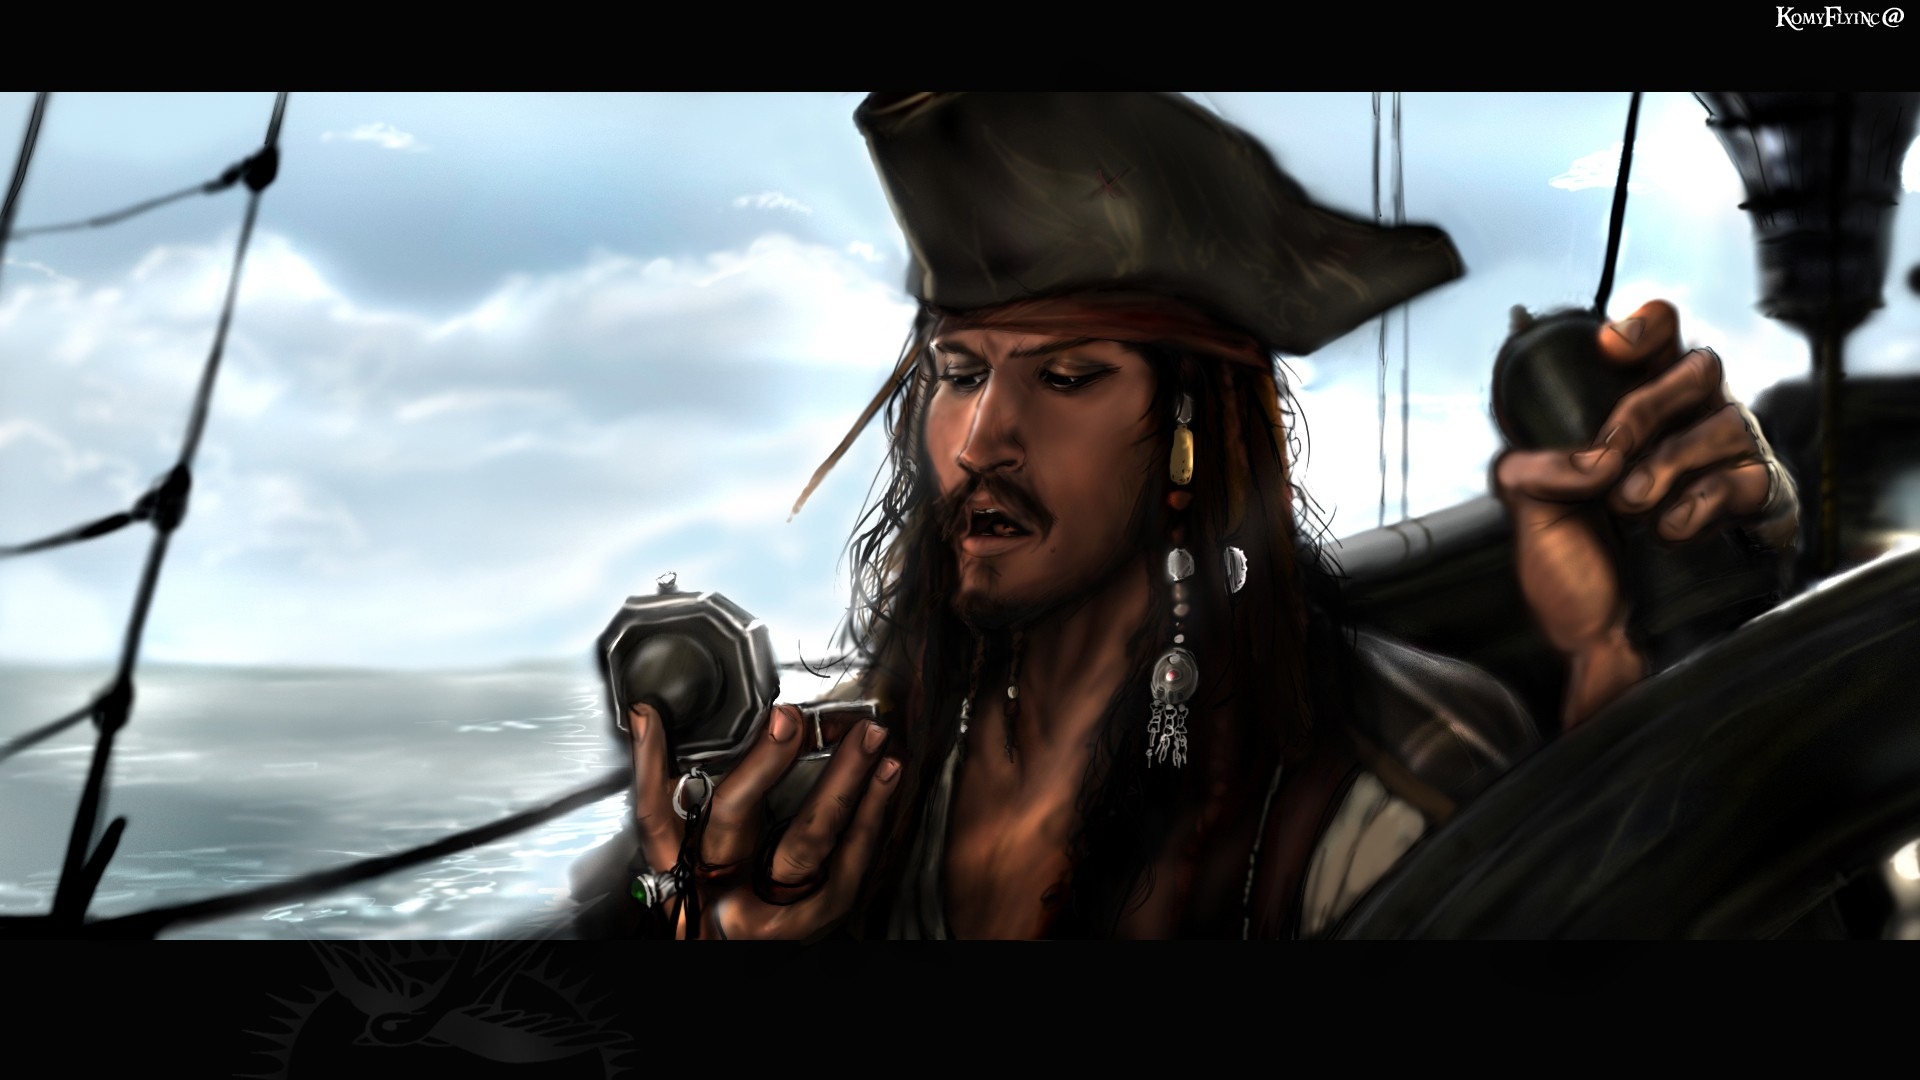 加勒比海盗杰克·斯派洛海盗高清壁纸高清原图查看